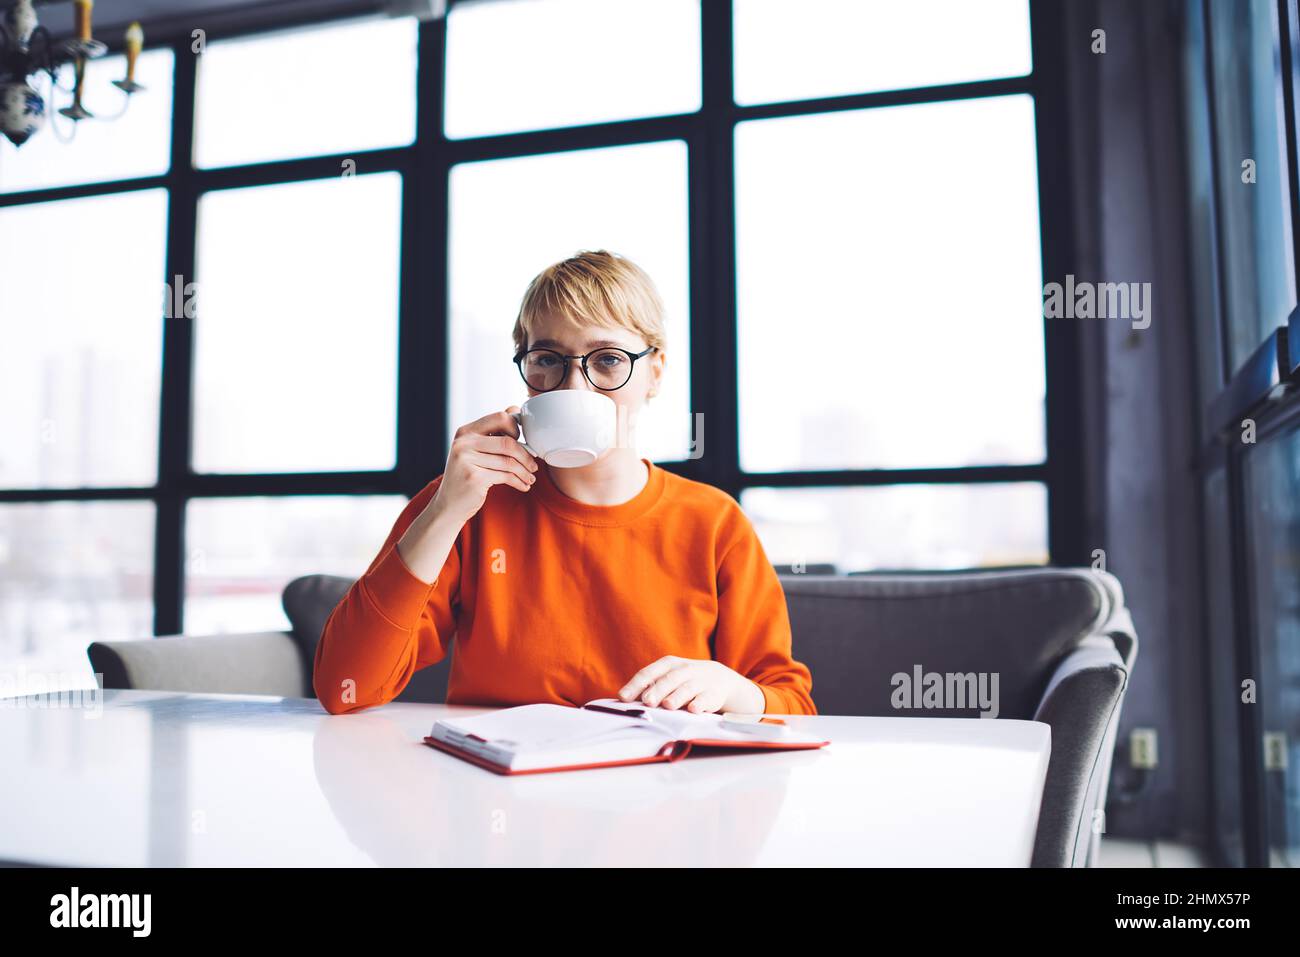 Femme buvant du café dans une cafétéria moderne Banque D'Images